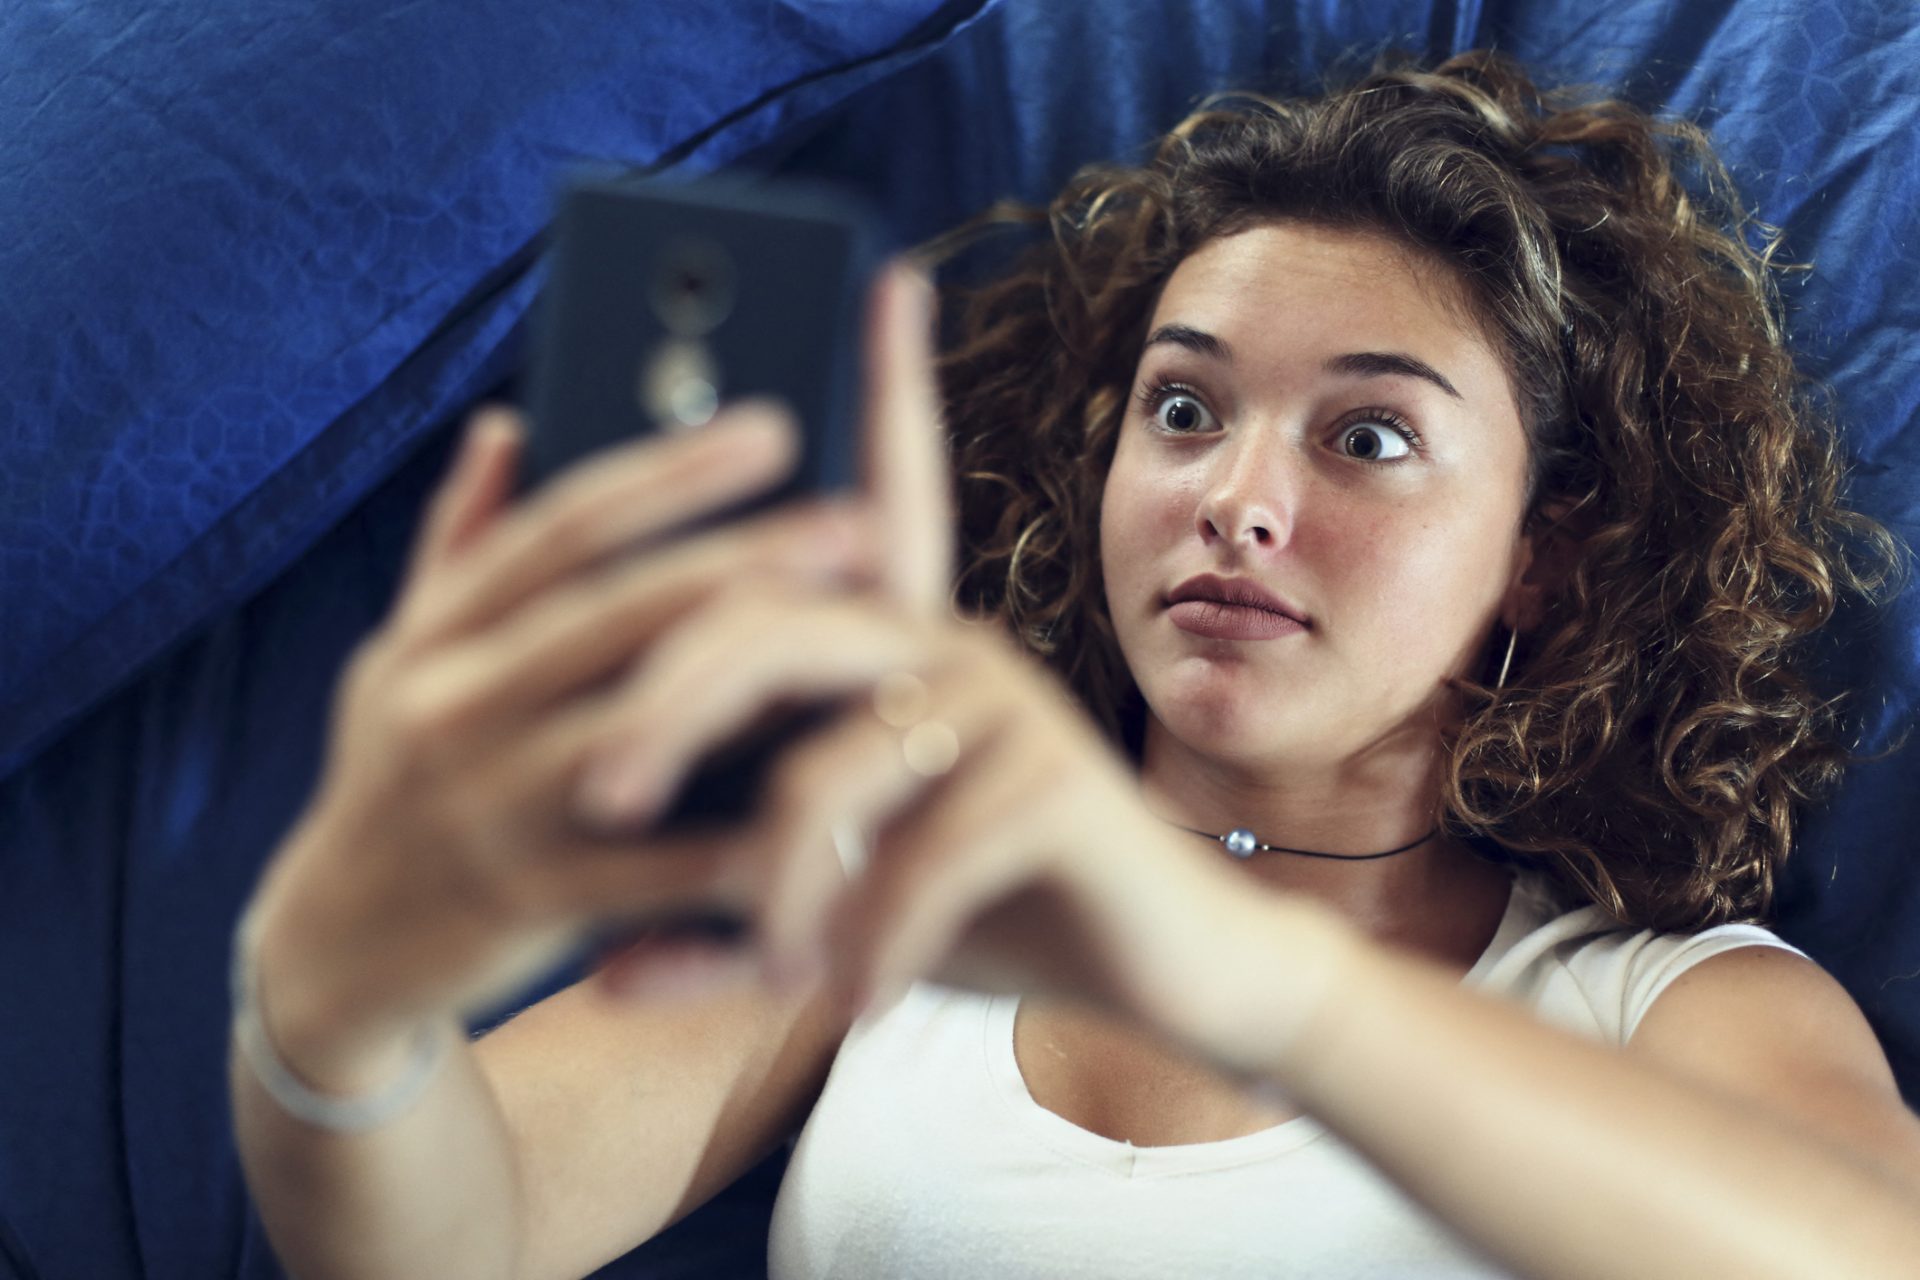  Facebook pedirá que los jóvenes se den un descanso de Instagram